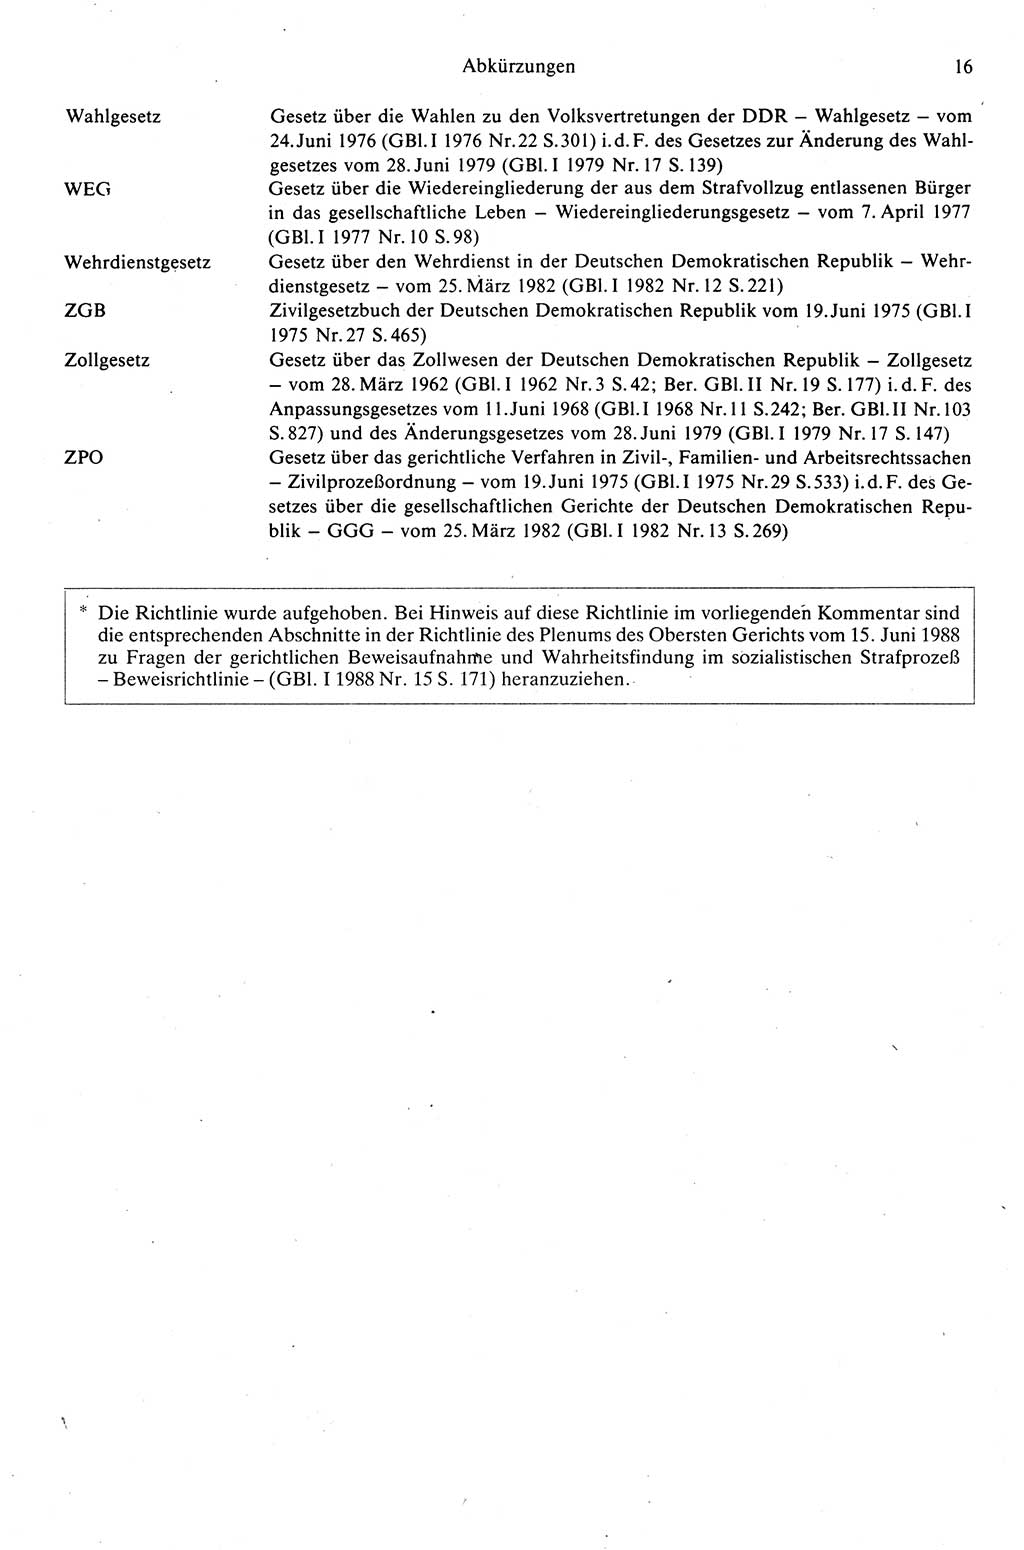 Strafprozeßrecht der DDR (Deutsche Demokratische Republik), Kommentar zur Strafprozeßordnung (StPO) 1989, Seite 16 (Strafprozeßr. DDR Komm. StPO 1989, S. 16)